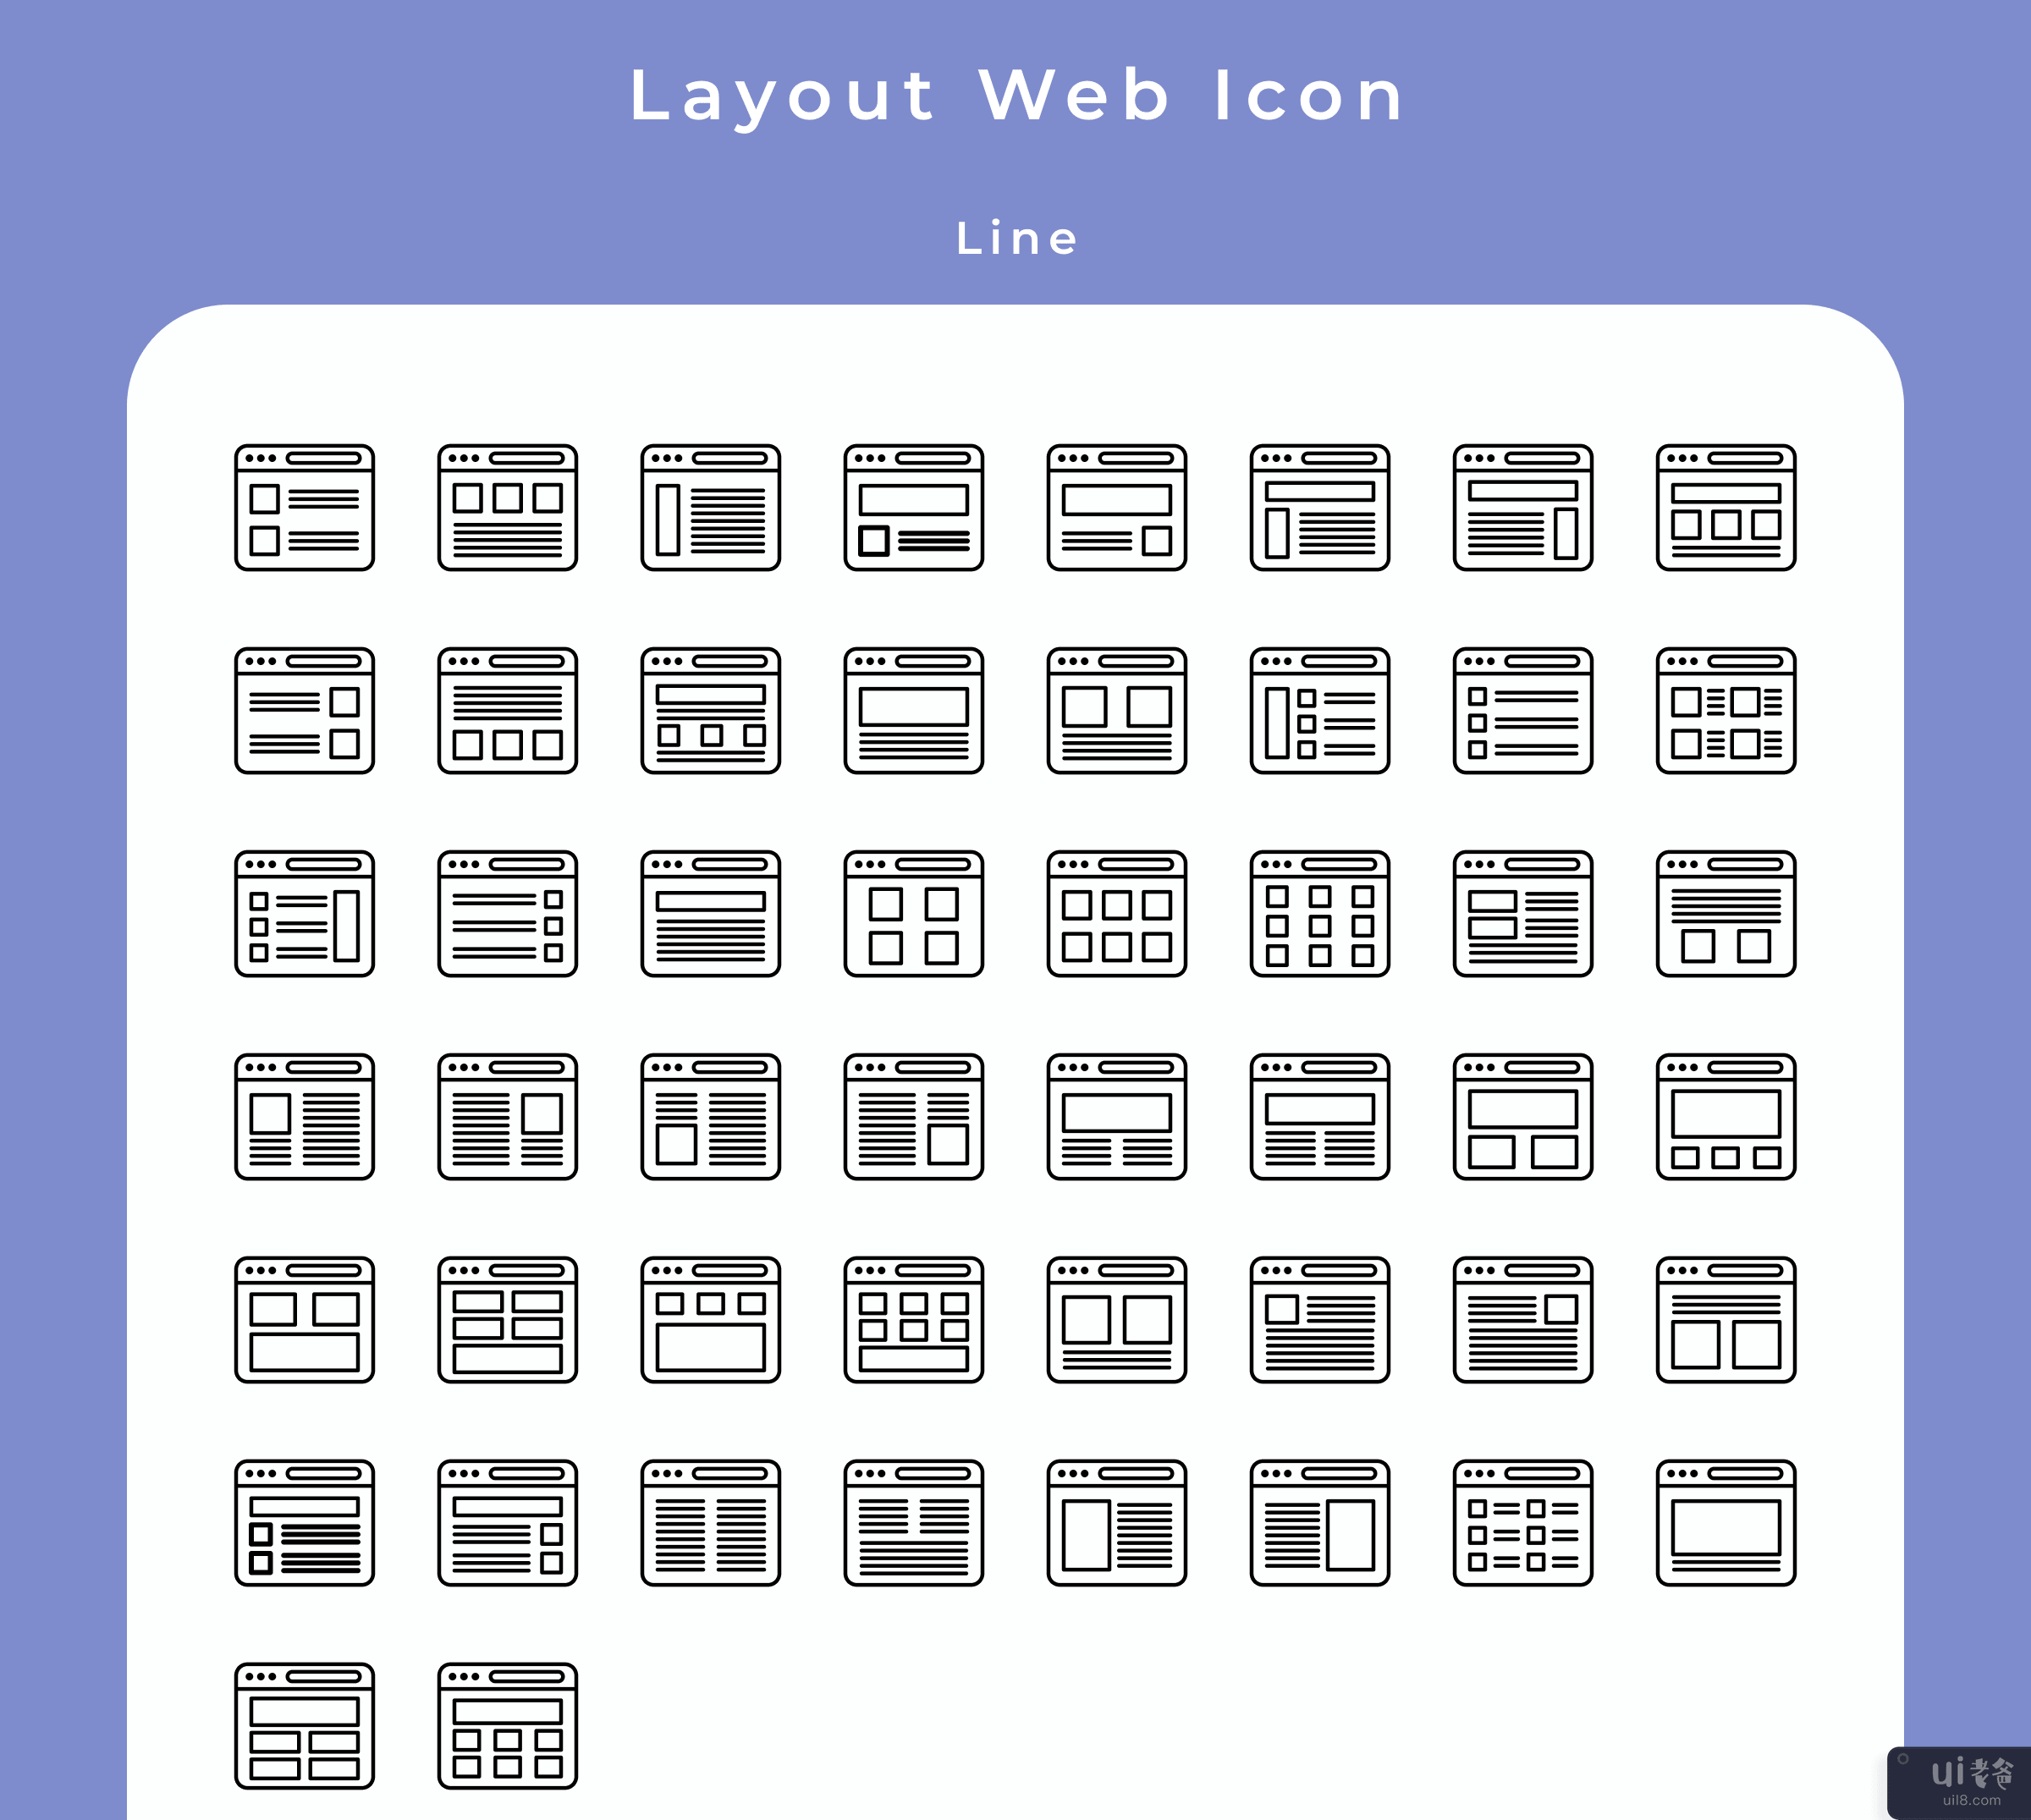 布局 Web 集图标#1(Layout Web Set Icon#1)插图